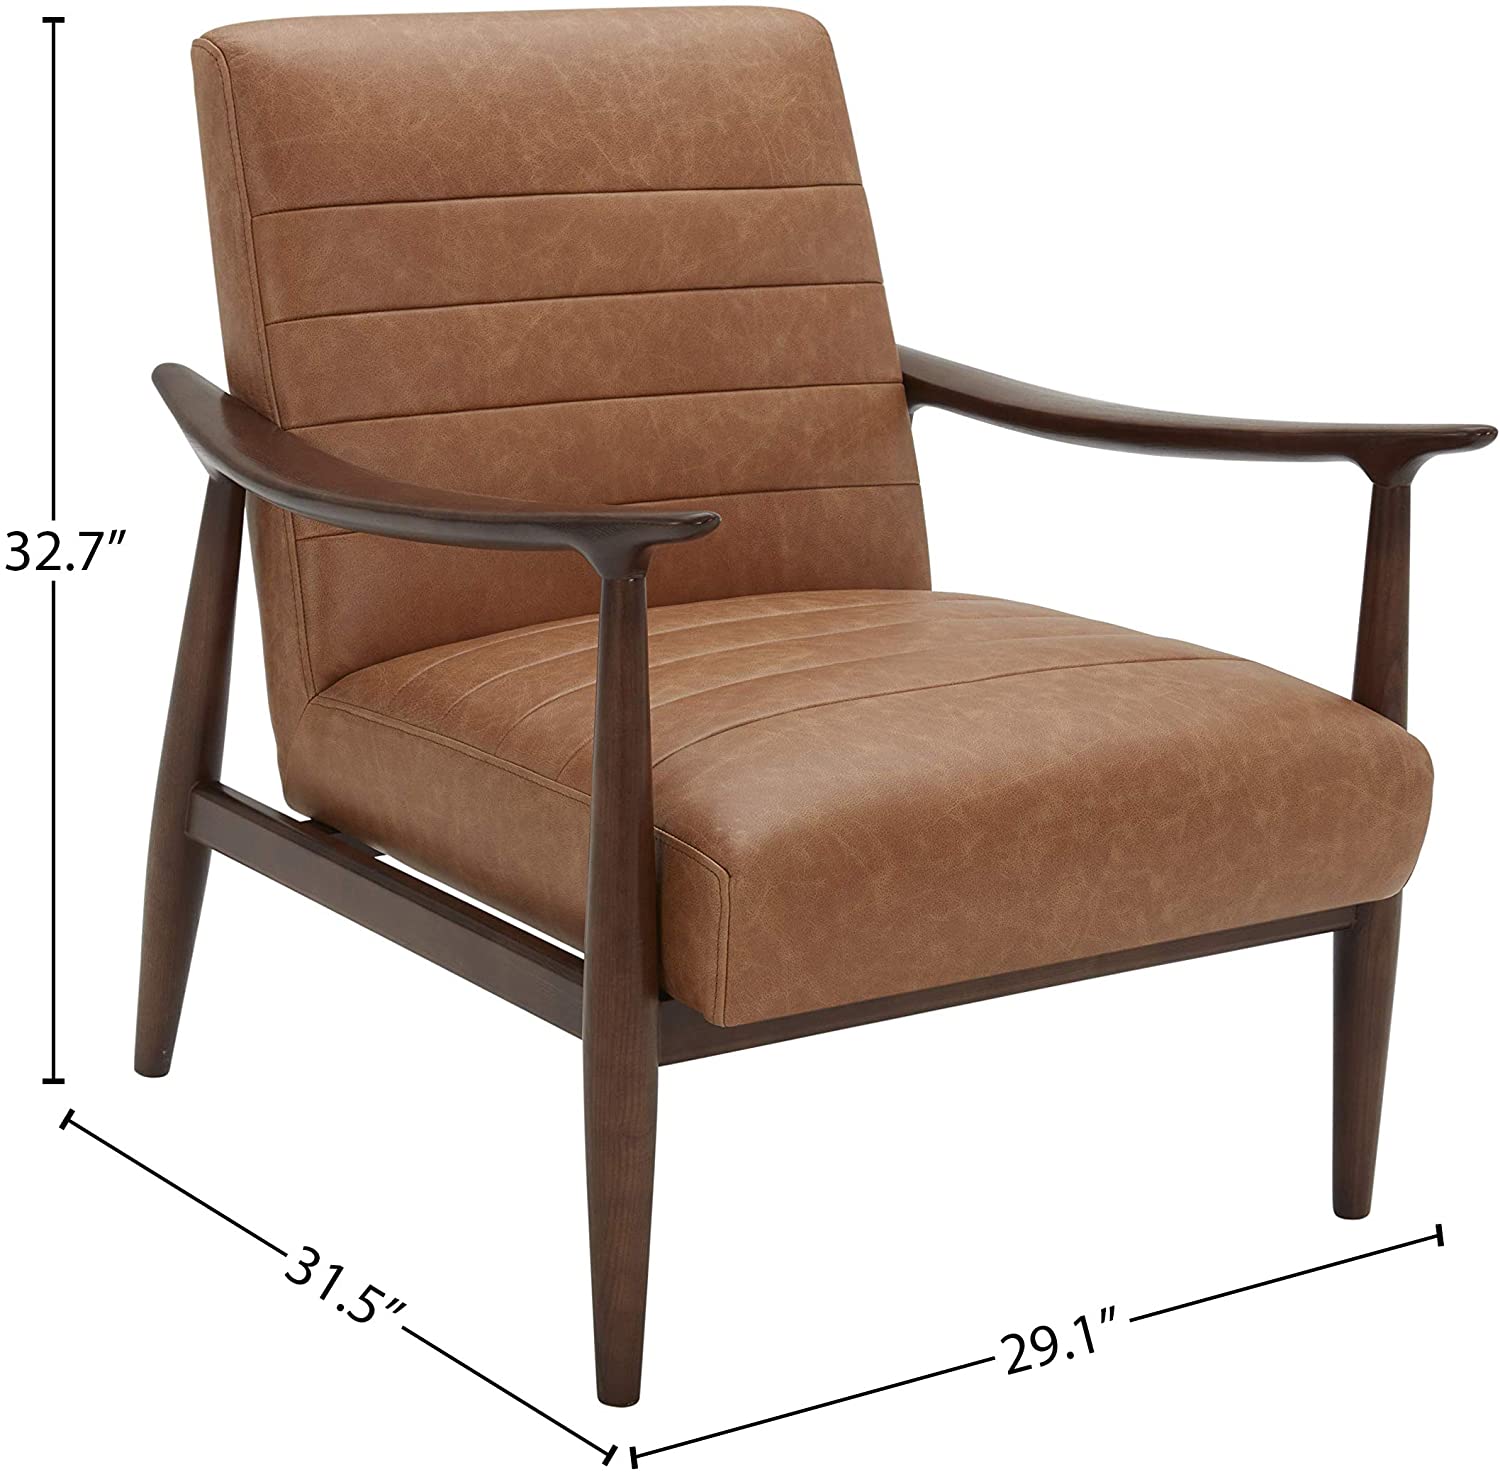 Sofa Chair: Wood Antique Chair Sofa